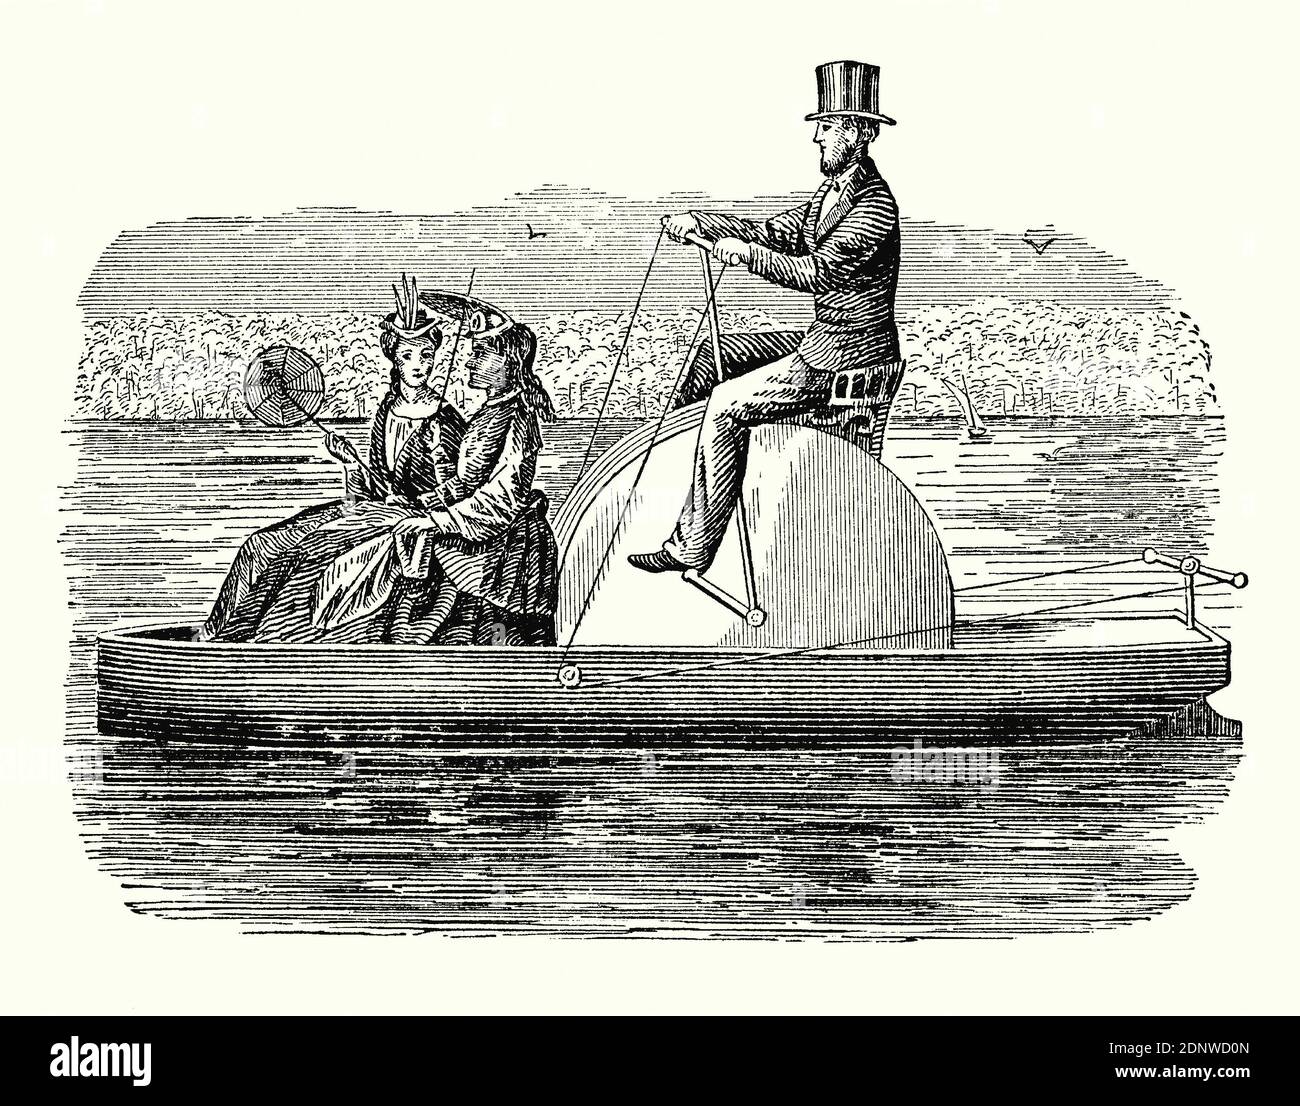 Eine alte Gravur eines Mannes, der eine ‘Wasser velocipede’, ein Tretboot/Fahrrad, in den 1800er Jahren fährt. Es ist aus einem viktorianischen Maschinenbaubuch der 1880er Jahre. Der Mann sitzt auf einem Gehäuse mit einem Schaufelrad, das er über die Fußpedale fährt. Die Steuerung erfolgt über die Lenkstange, die das Ruder mit Seilen und Riemenscheiben bedient. Er hat zwei gut gekleidete weibliche Passagiere an Bord. Viele Fahrradtypen wurden während der viktorianischen Zeit erfunden – von dem wirklich nützlichen bis zum fantasievollen und amüsanten Design variierend. Stockfoto